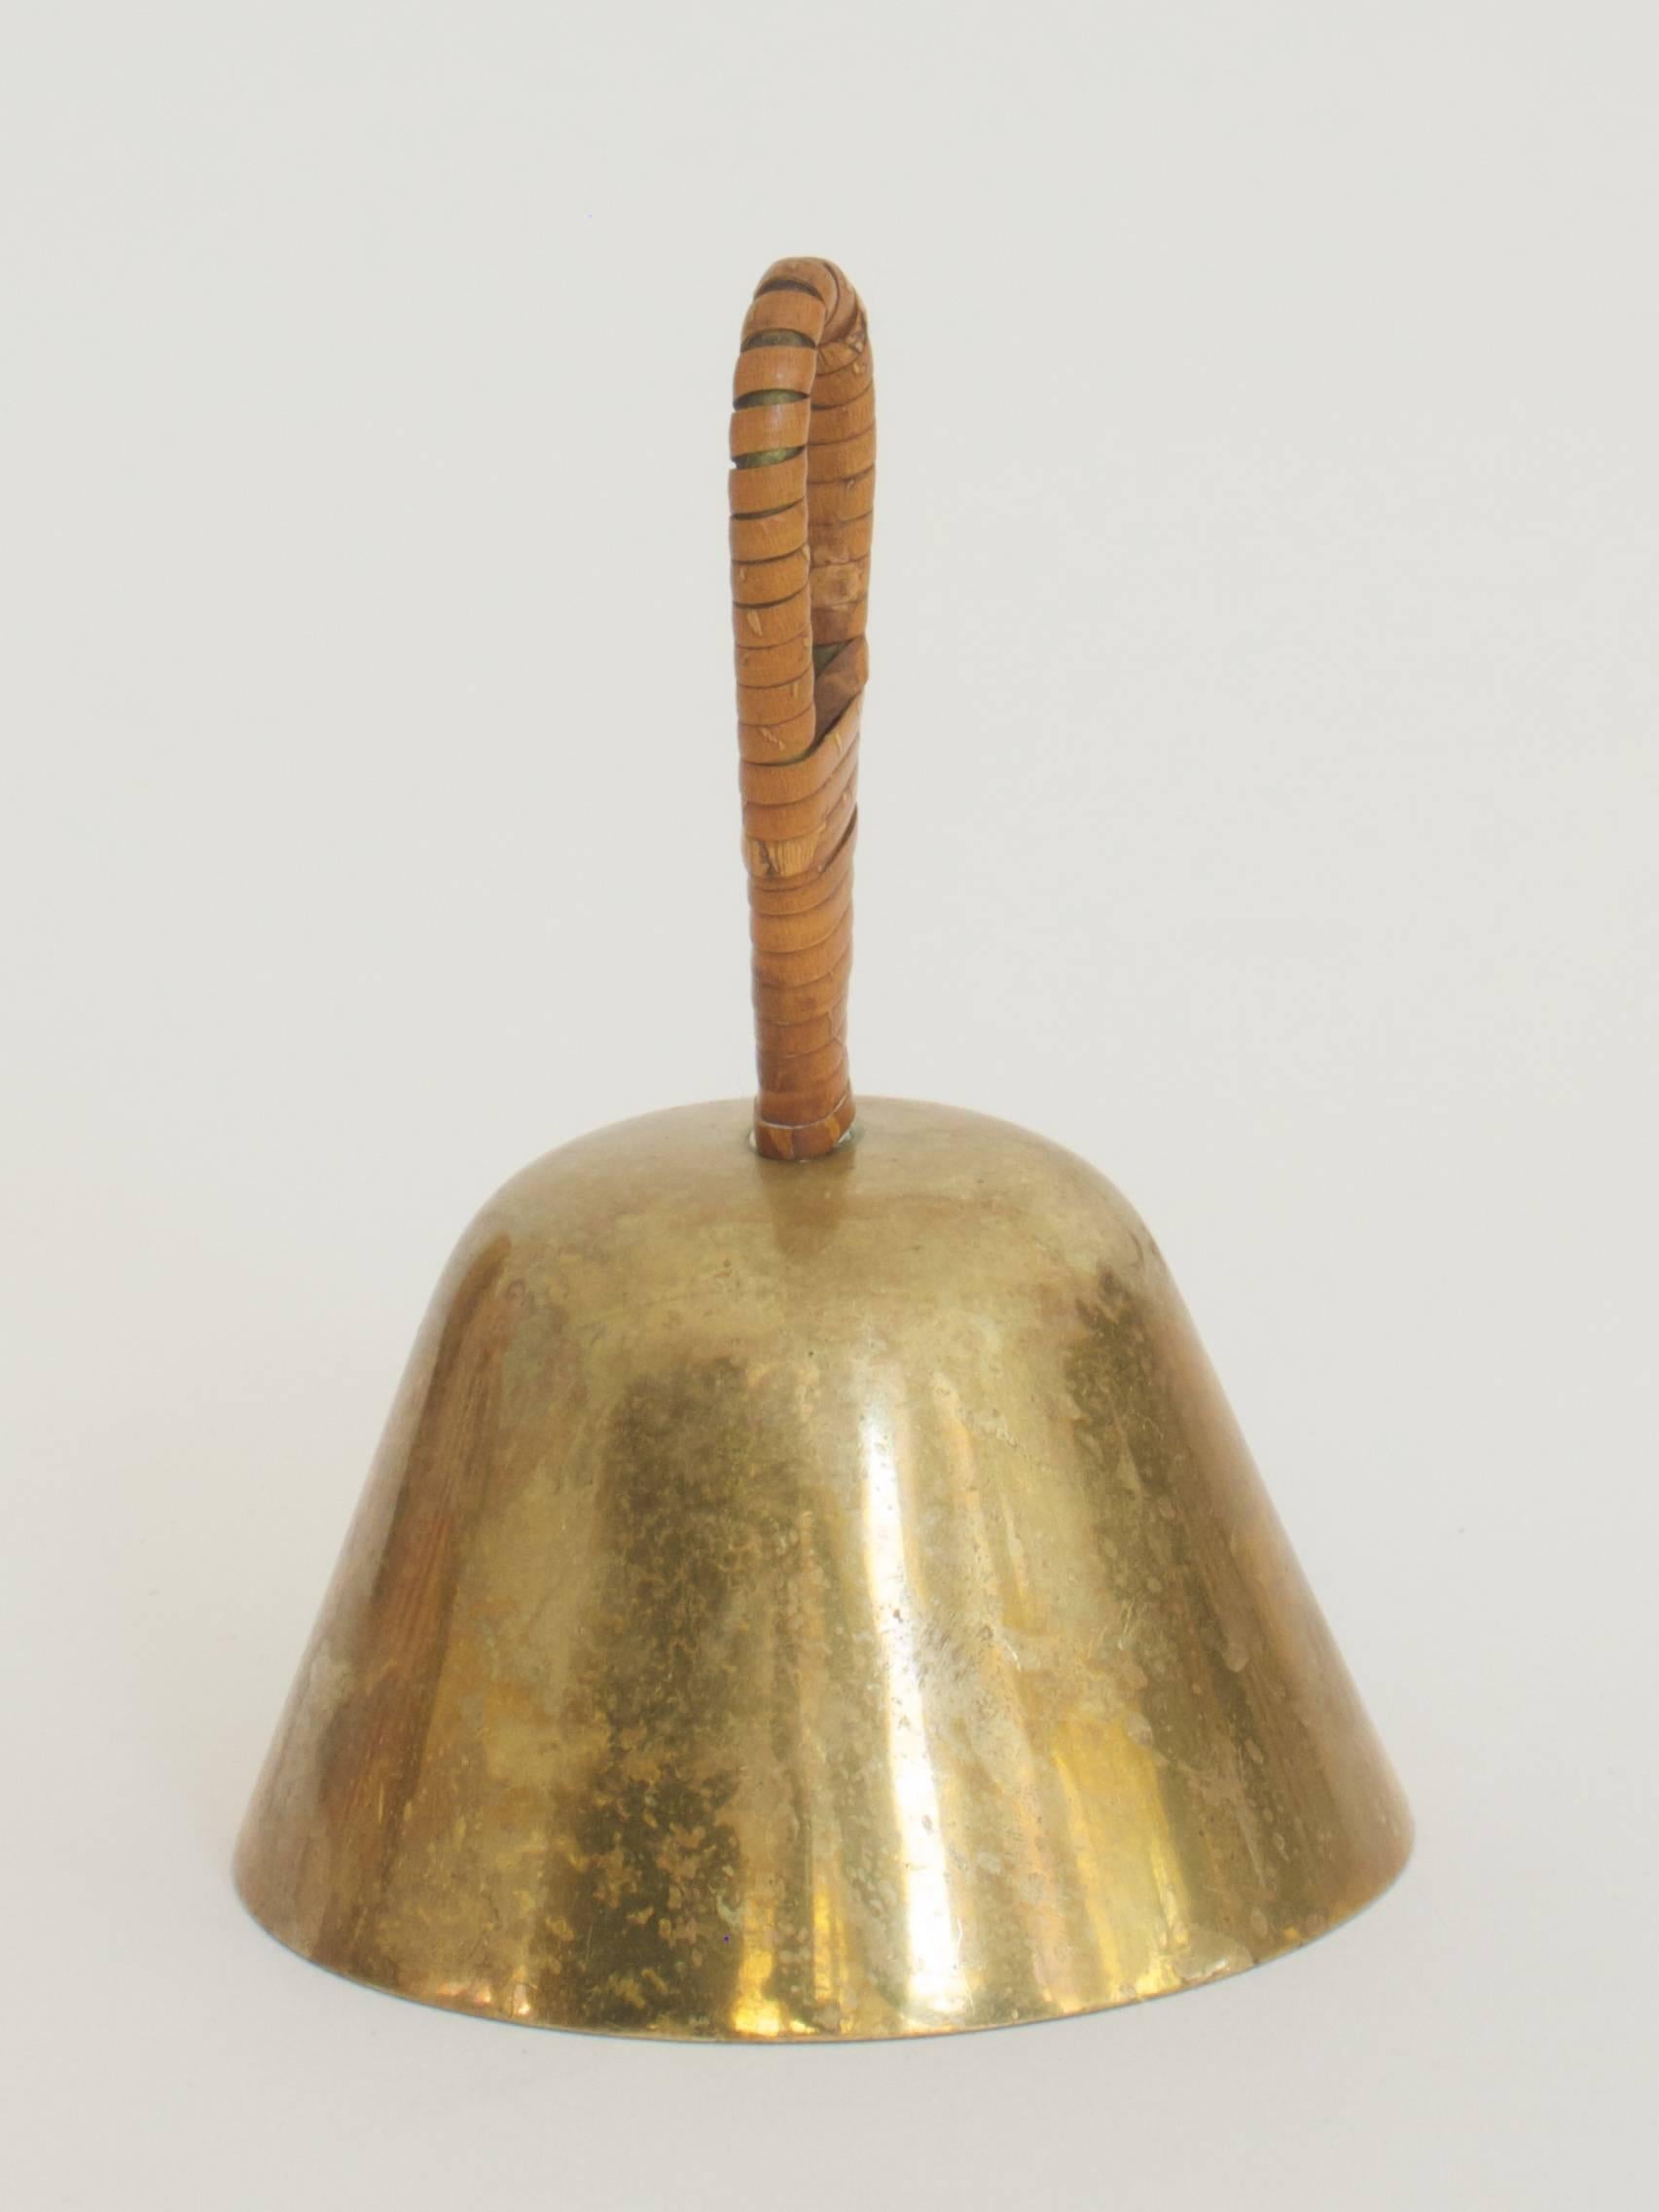 Austrian Bell by Carl Auböck